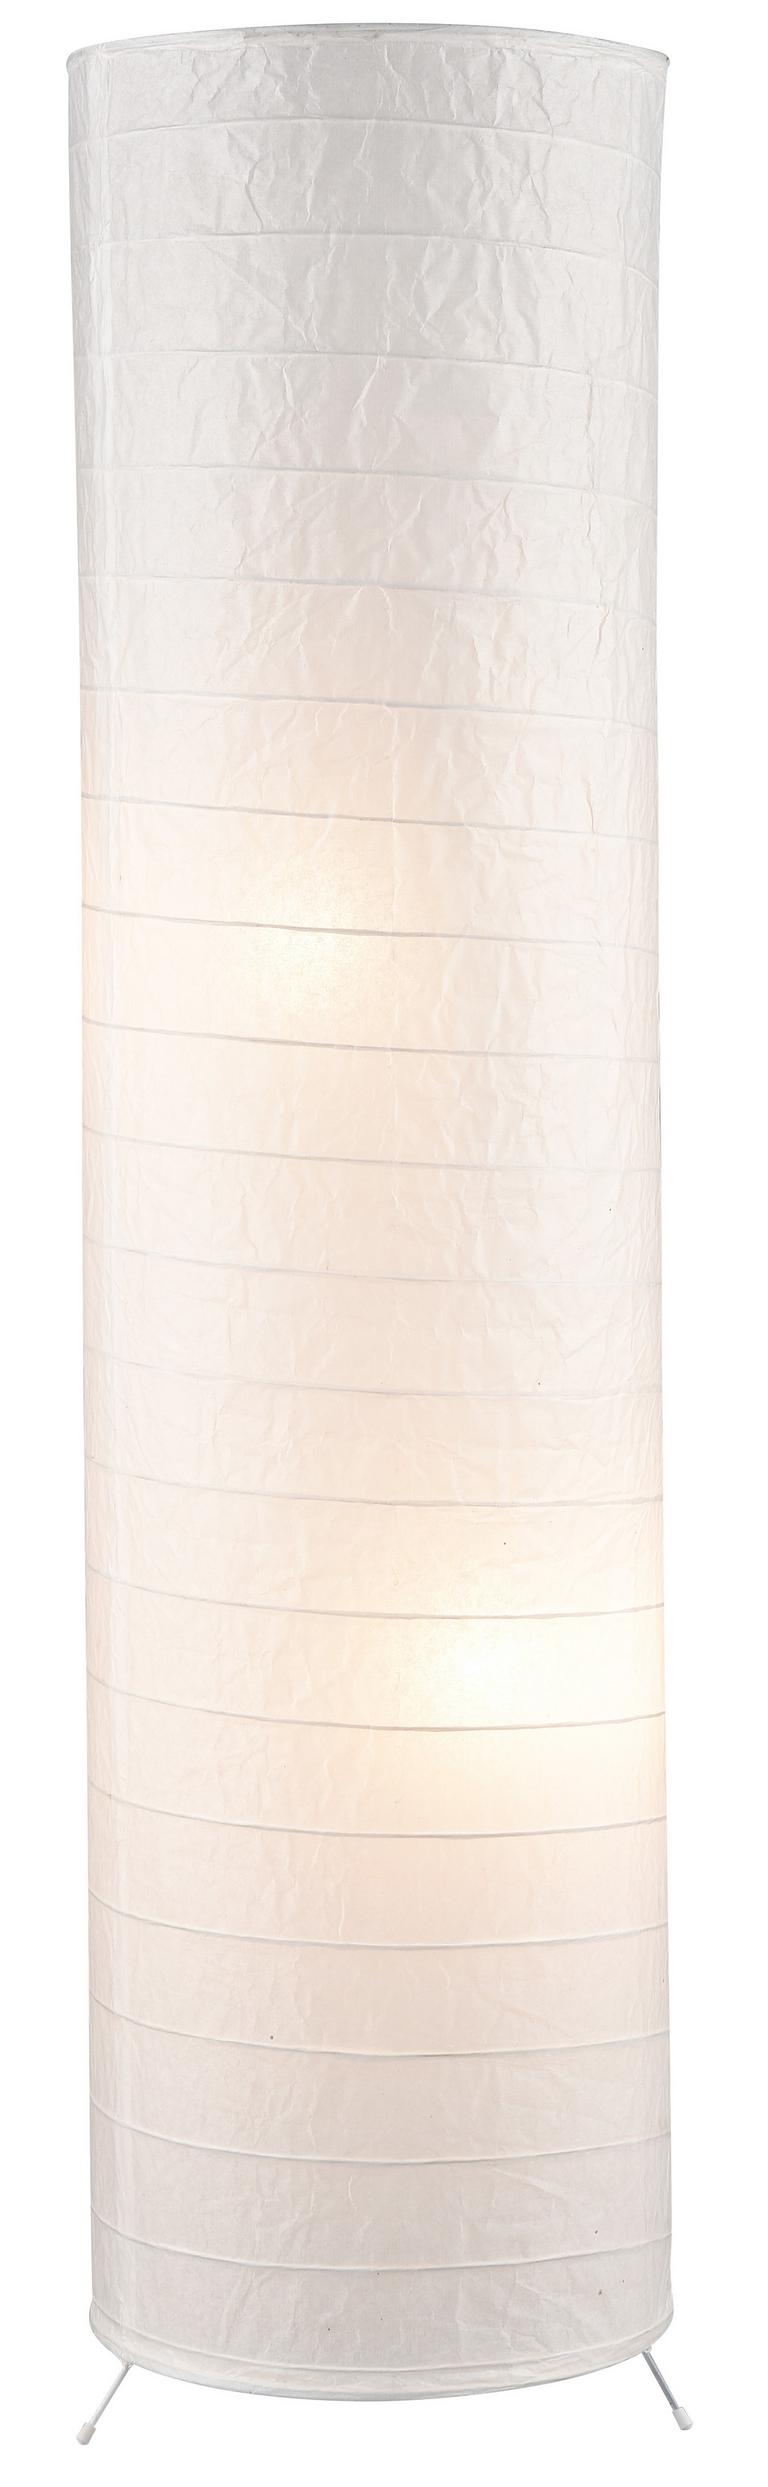 Homezone Stehlampe Julia mit Weißem Papierschirm, Zylinderform Weiß